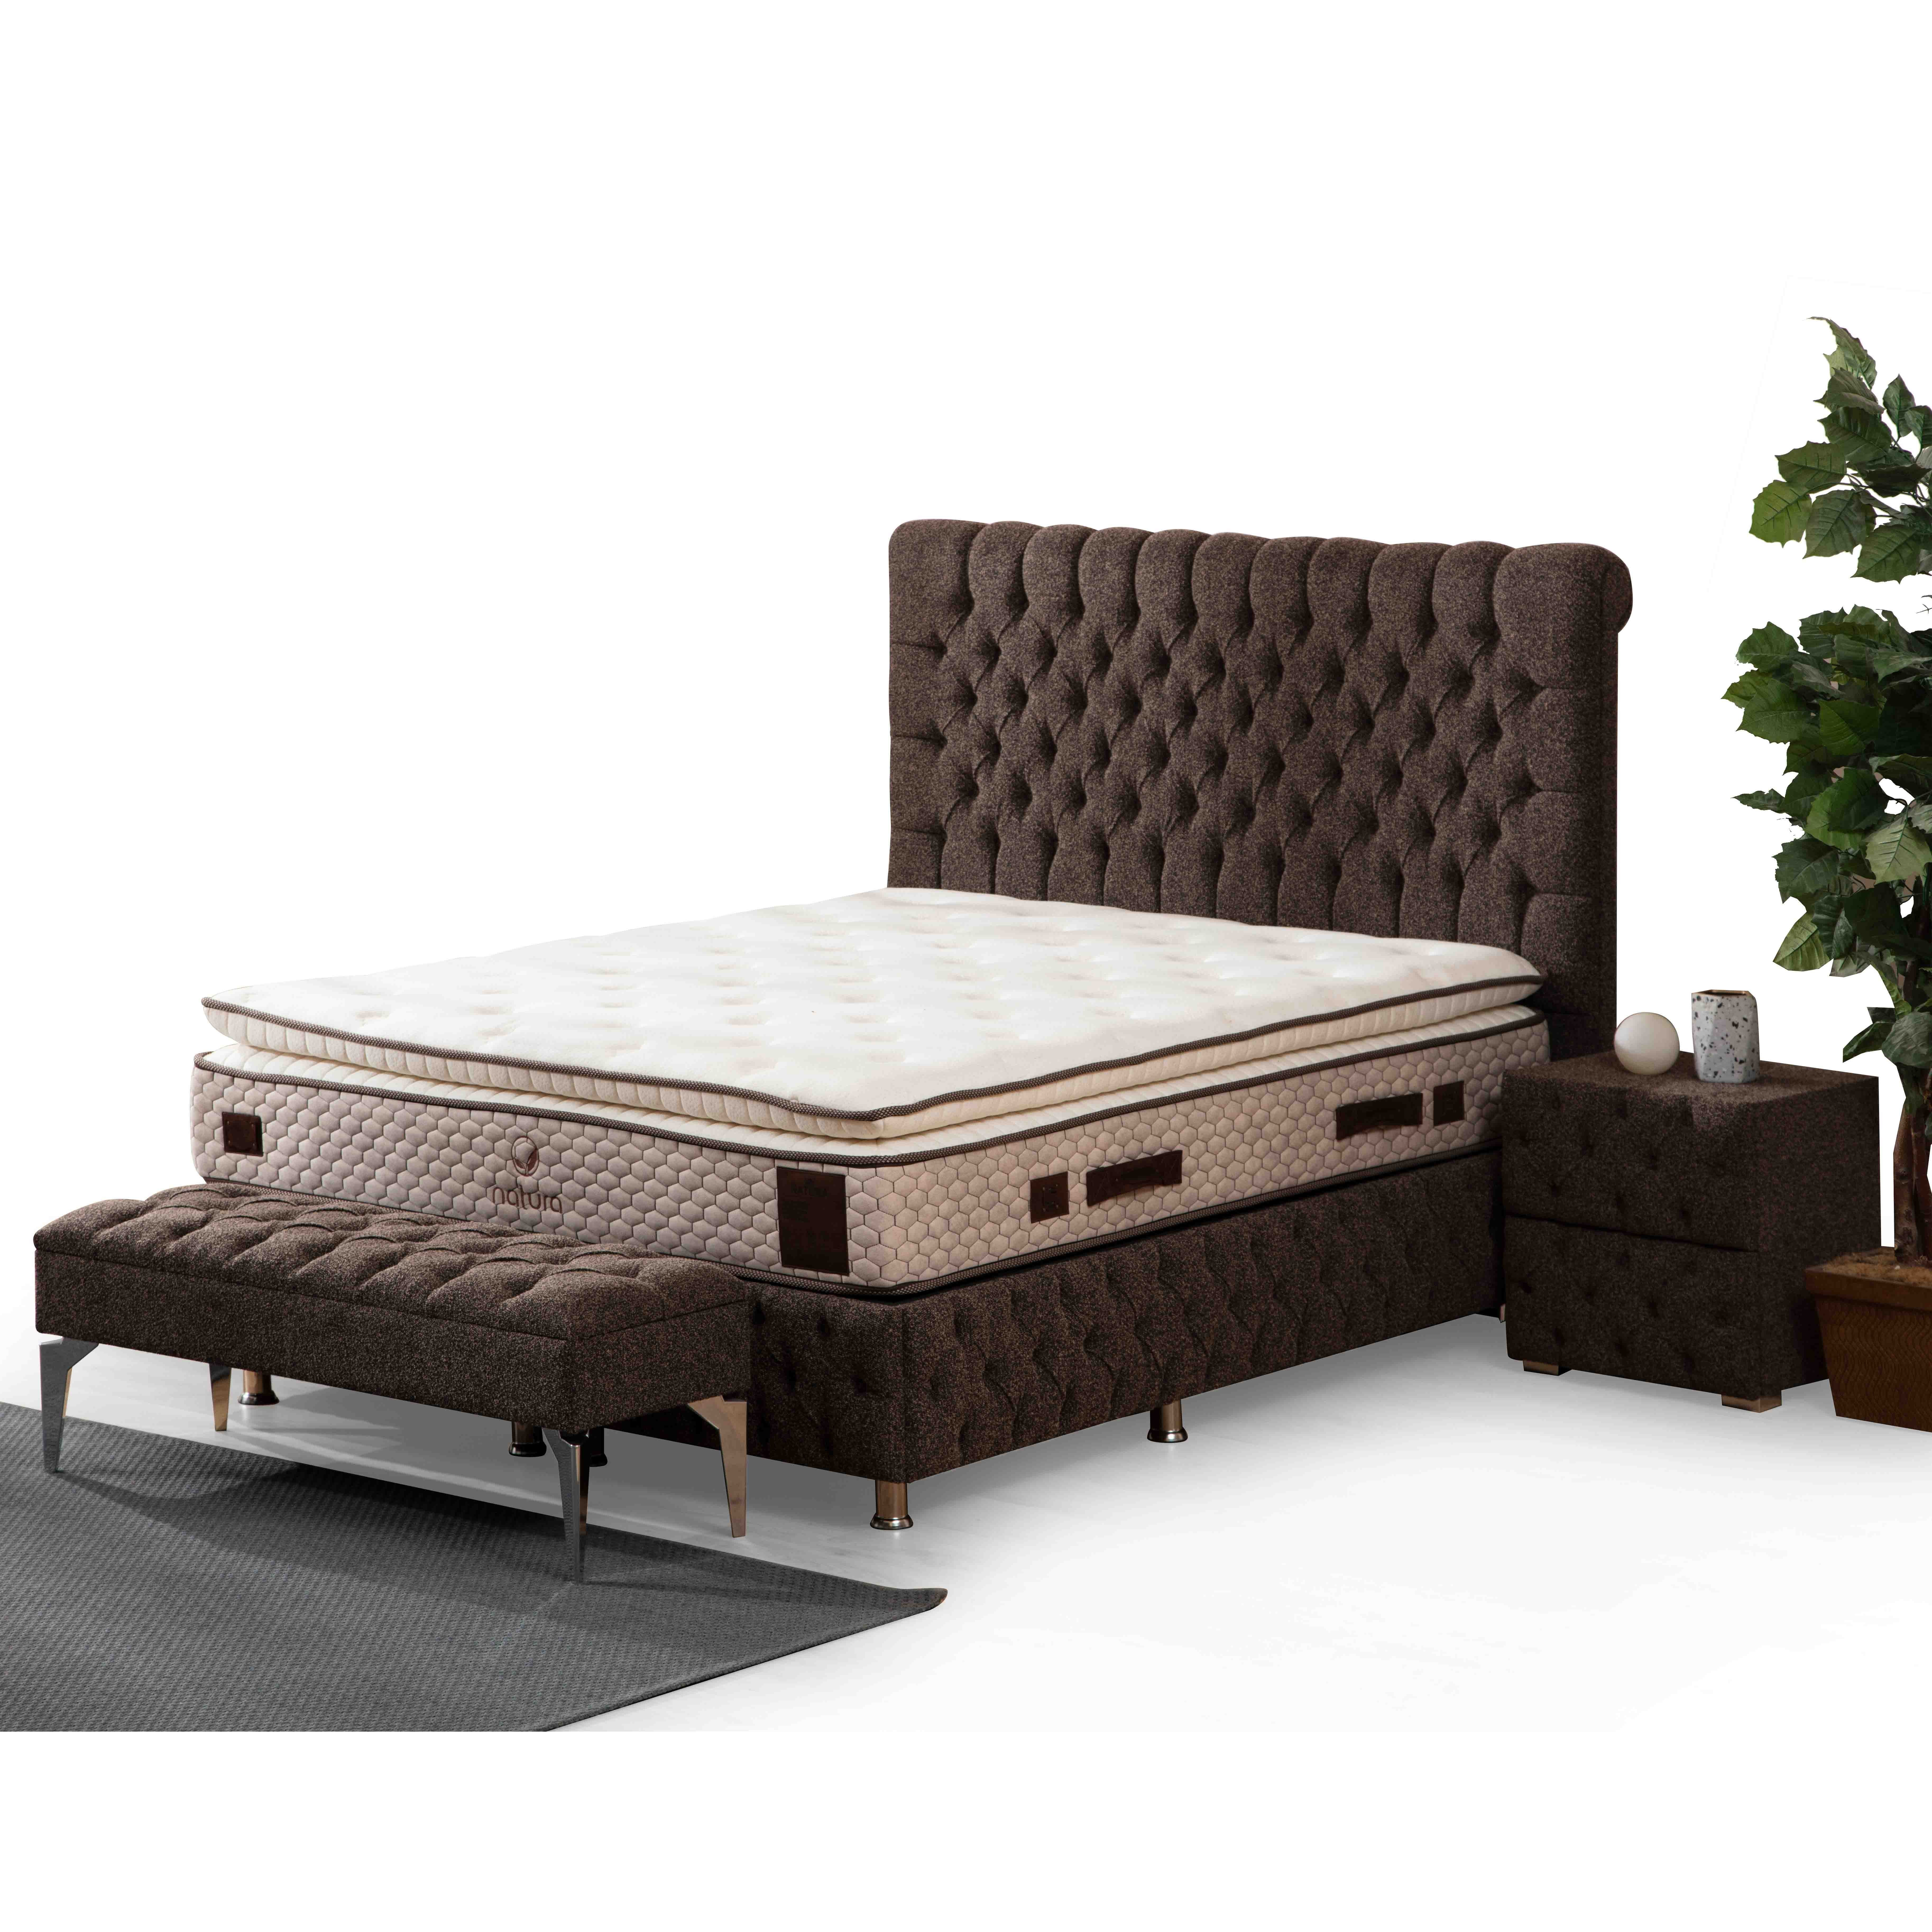 Luna Bed With Storage 160*200